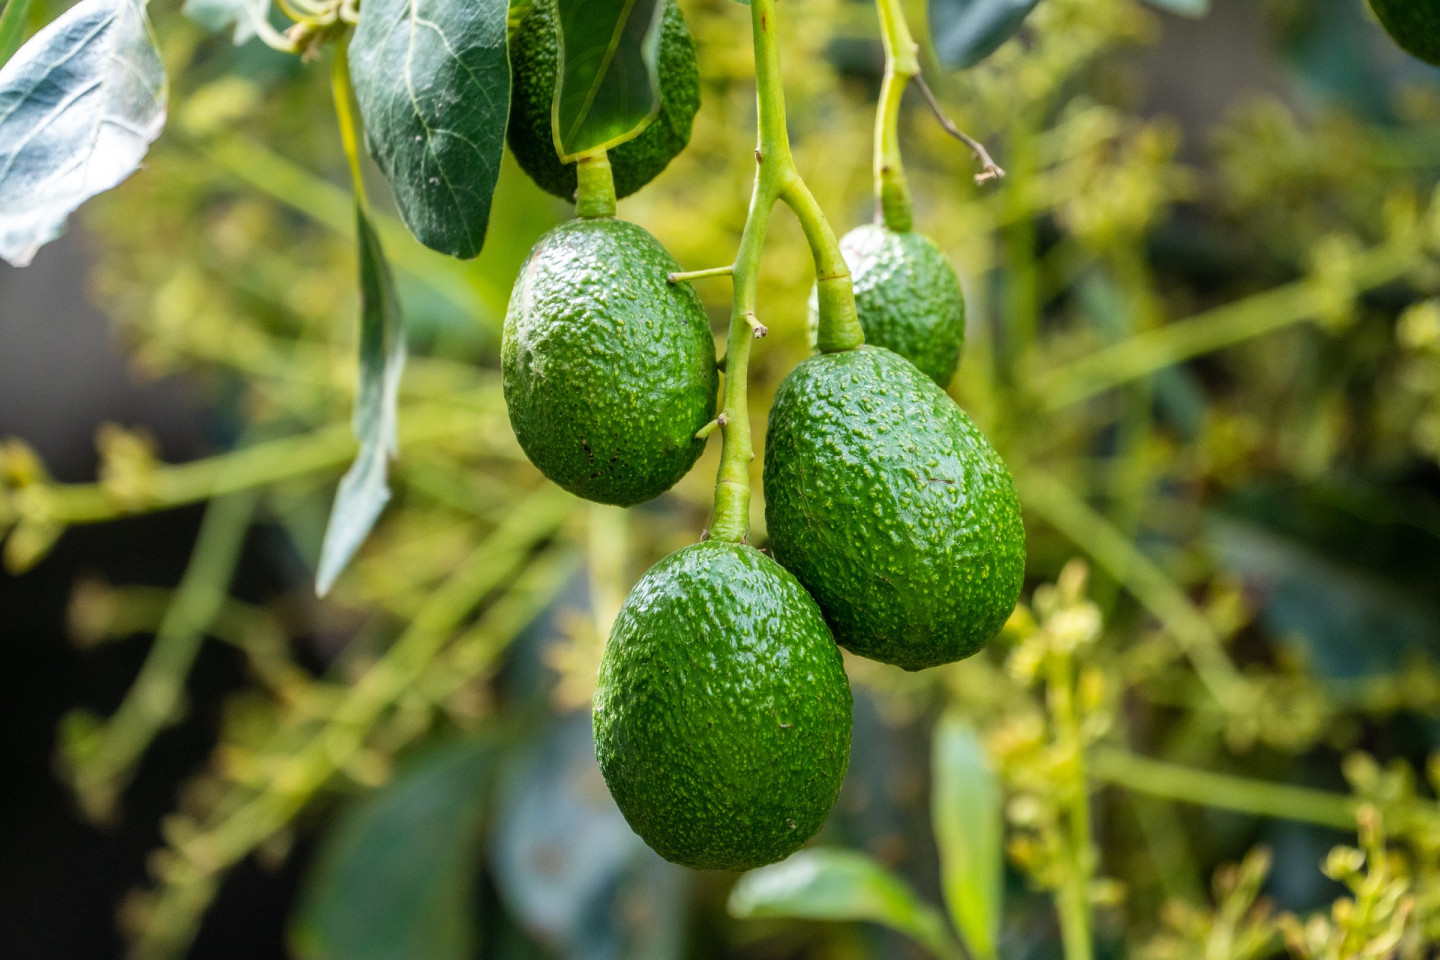 Созревание авокадо зависит от этилена — газа, который разрушает его внутренние стенки и превращает крахмал в сахар